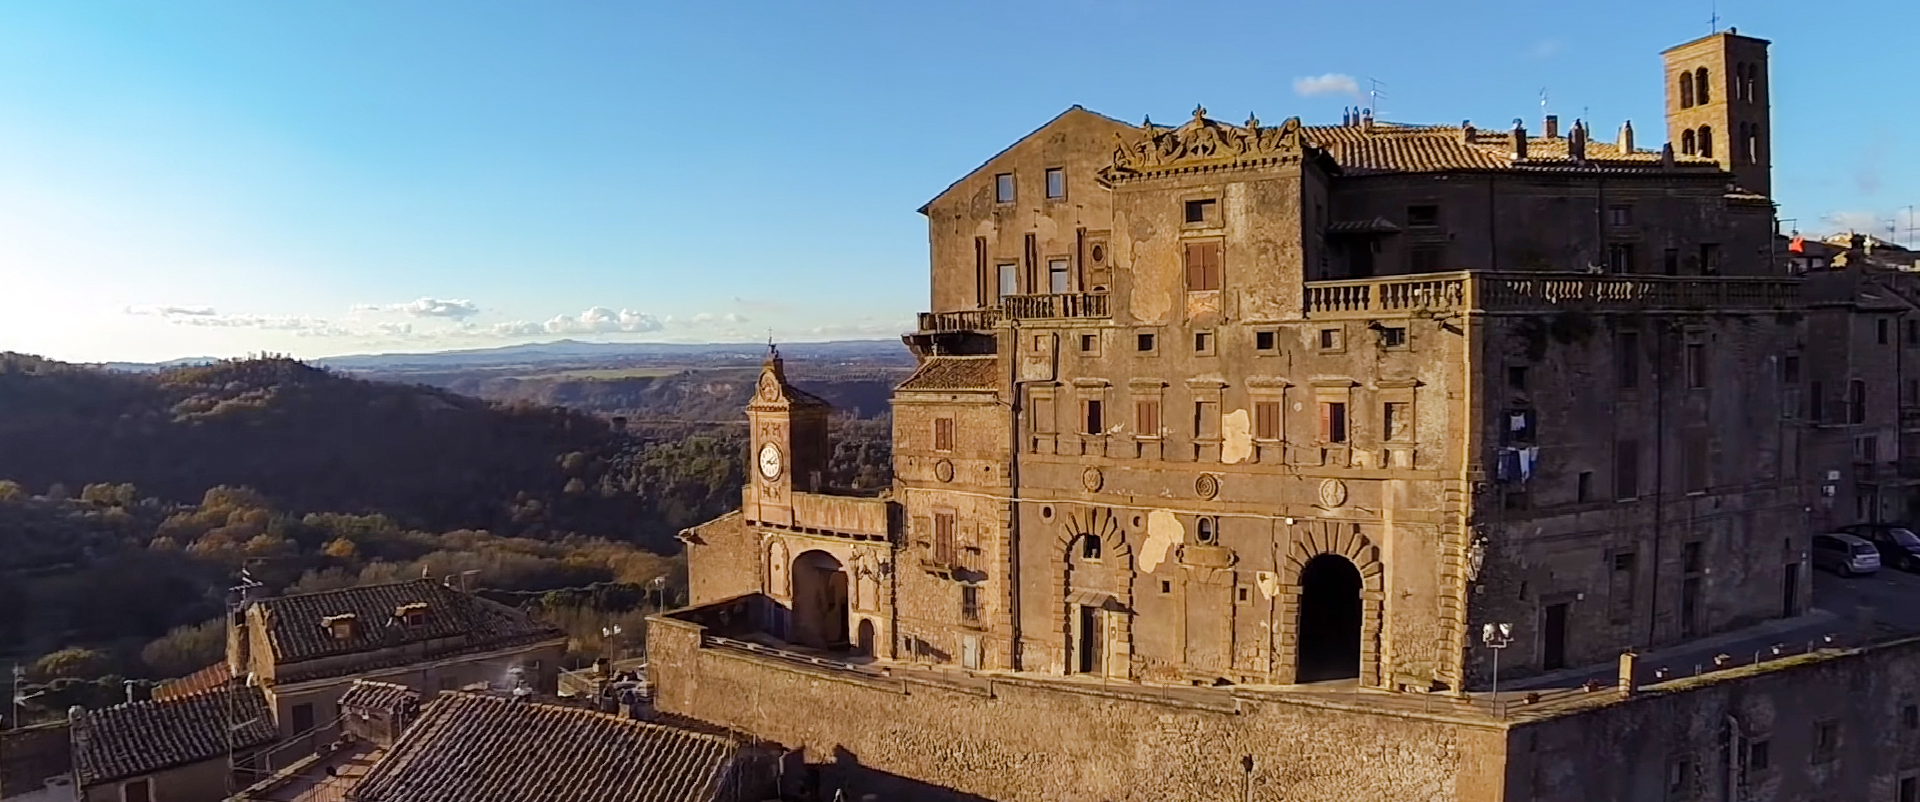 Bomarzo - Veduta della facciata di Palazzo Orsini